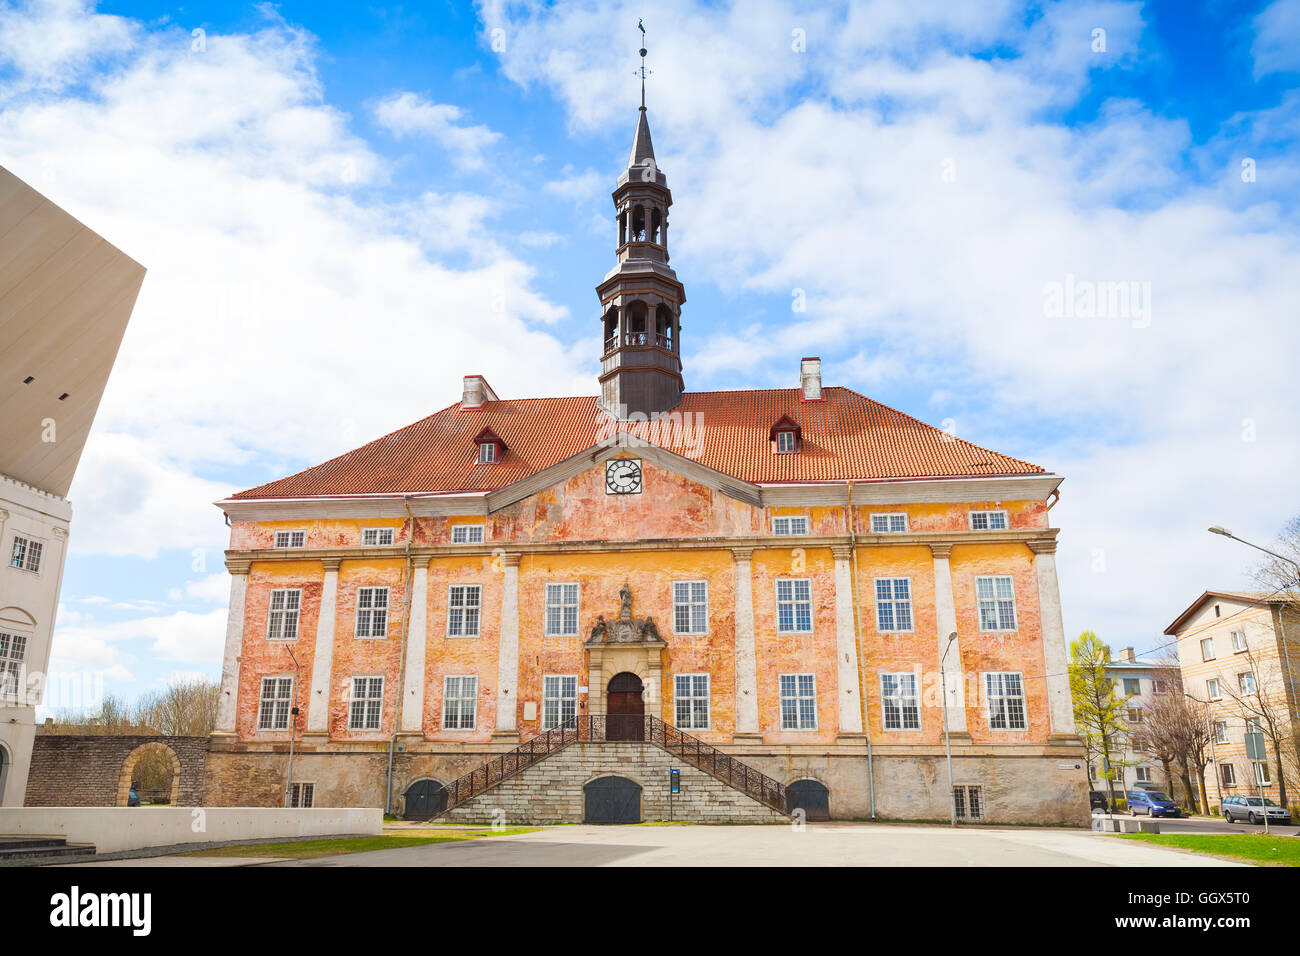 Ancien hôtel de ville de la ville de Narva, Estonie Banque D'Images